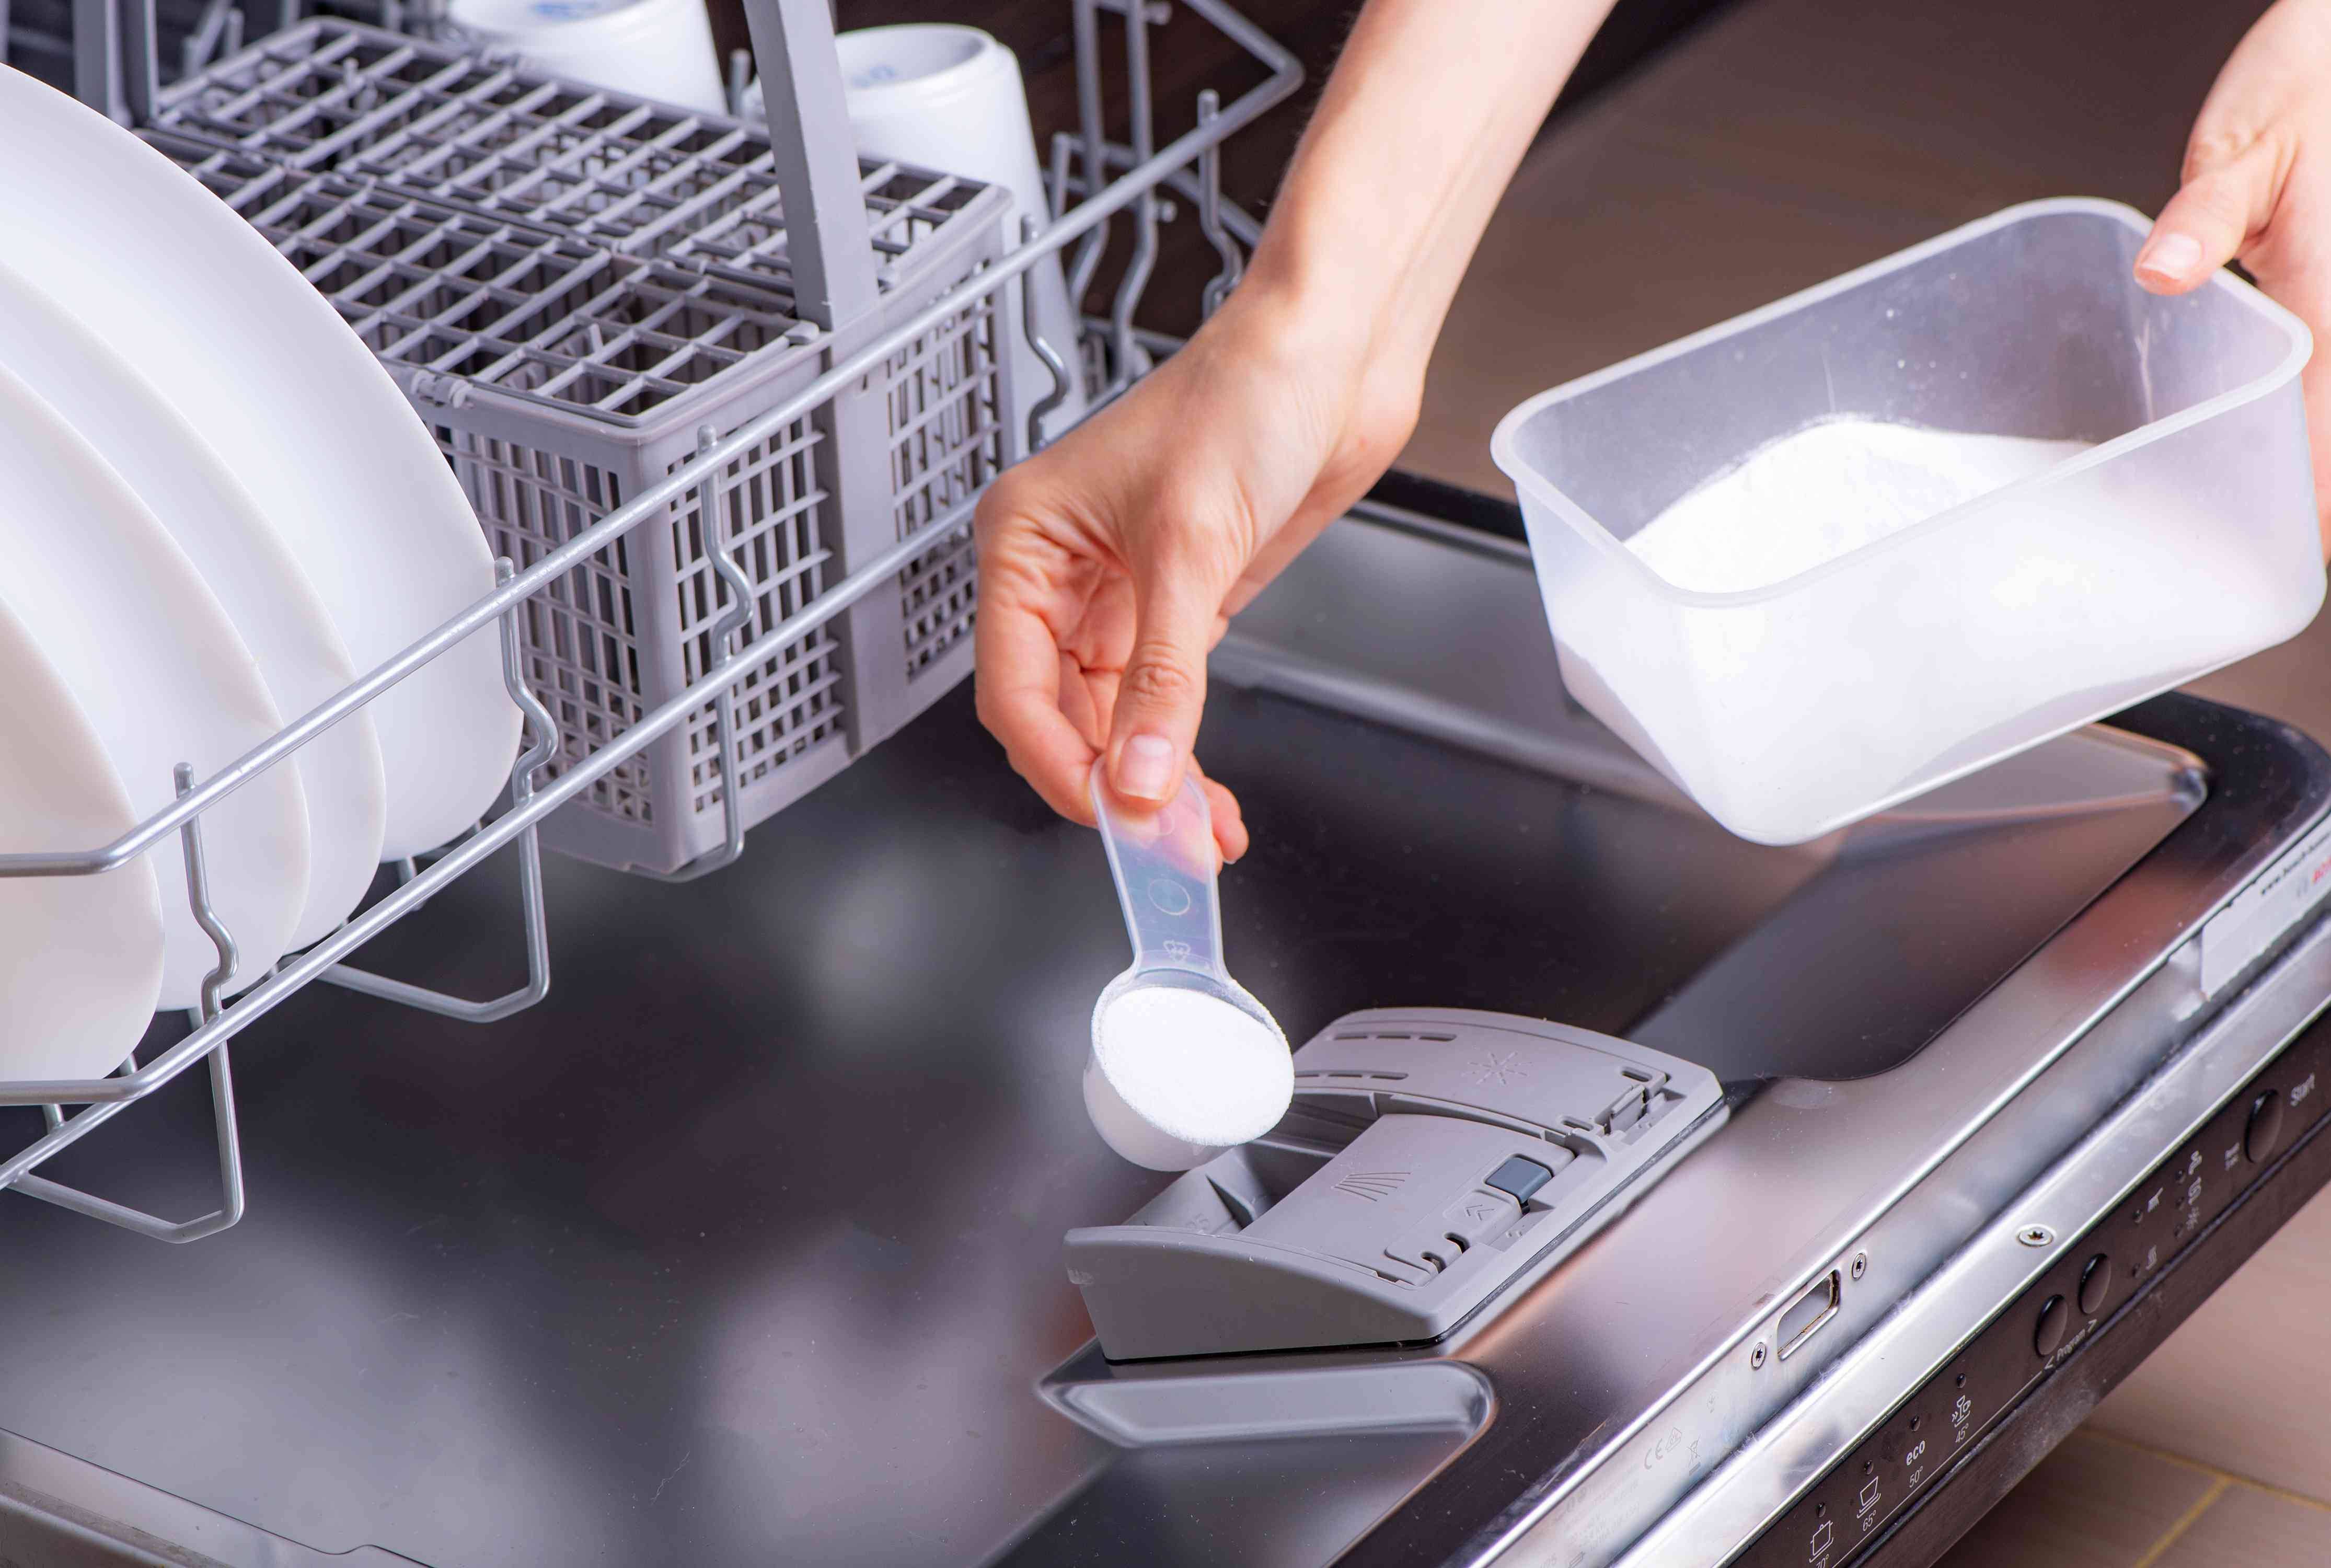 Как почистить посудомоечную машину?